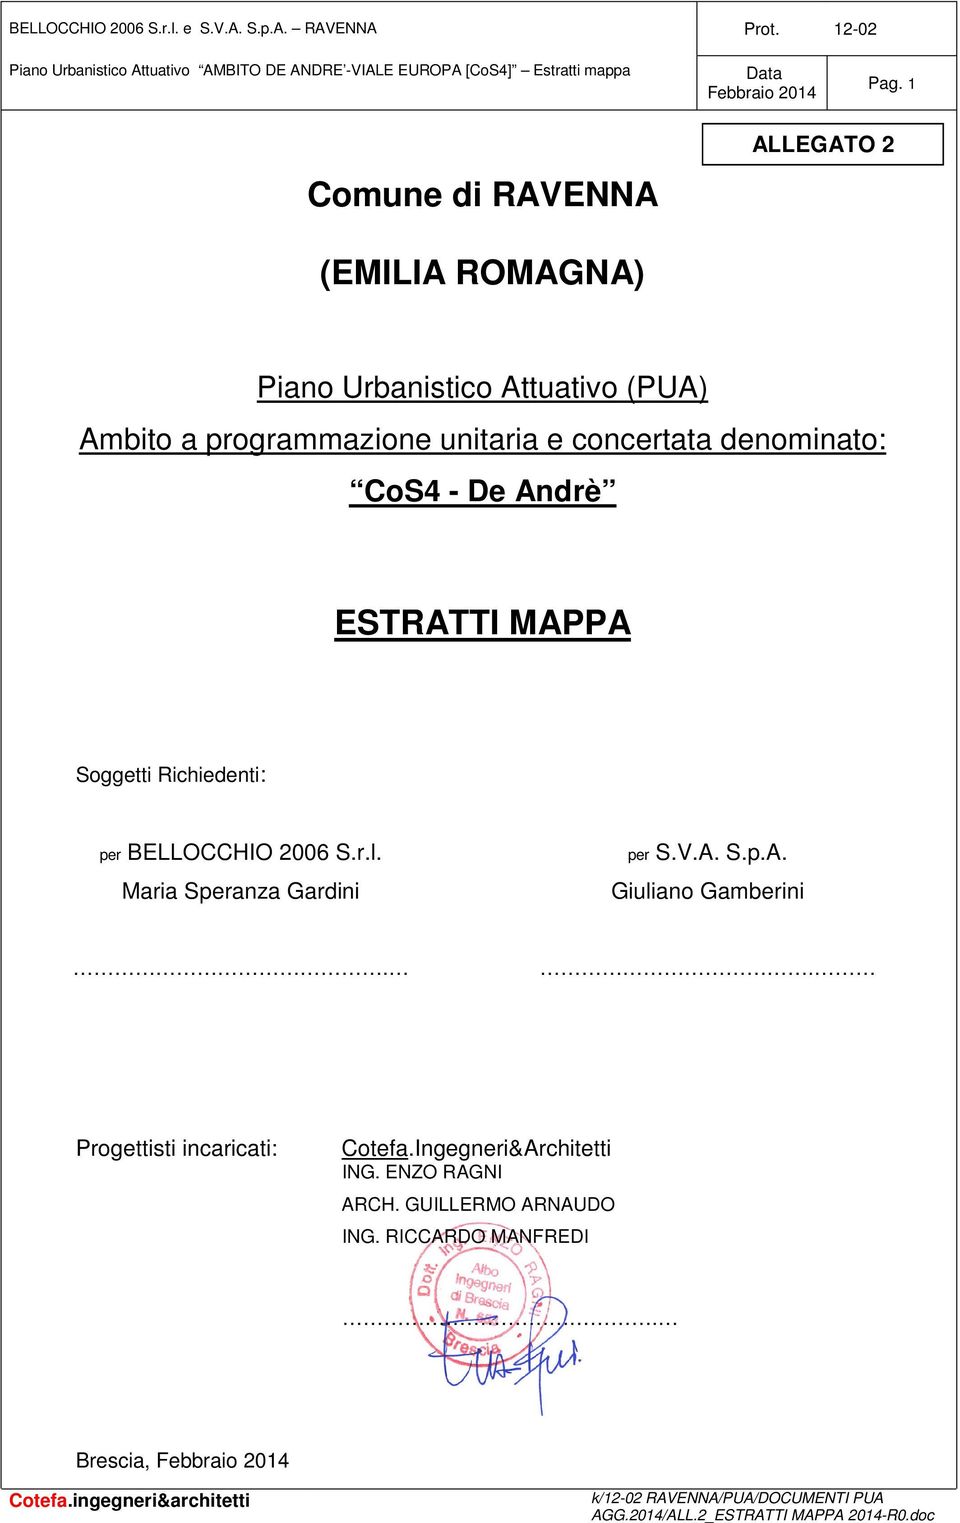 Soggetti Richiedenti: per BELLOCCHIO 2006 S.r.l. Maria Speranza Gardini per S.V.A. S.p.A. Giuliano Gamberini.. Progettisti incaricati: Cotefa.Ingegneri&Architetti ING.